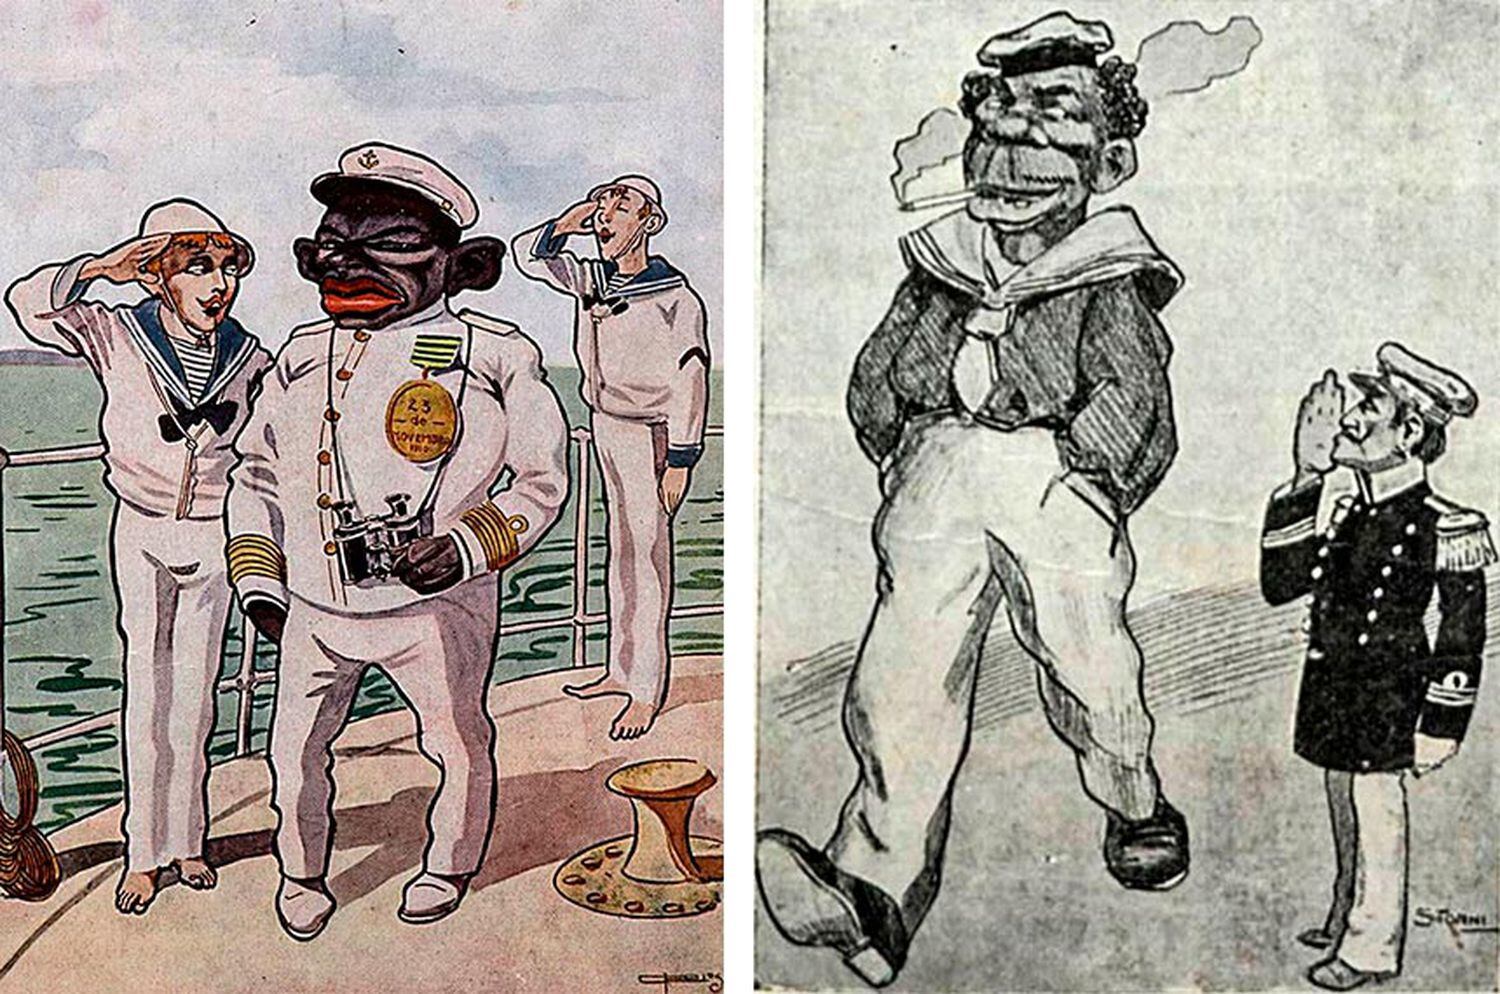 Charges de 1910 mostram que seria ridículo se negros comandassem brancos na Marinha; a imagem da direita retrata João Cândido como malandro